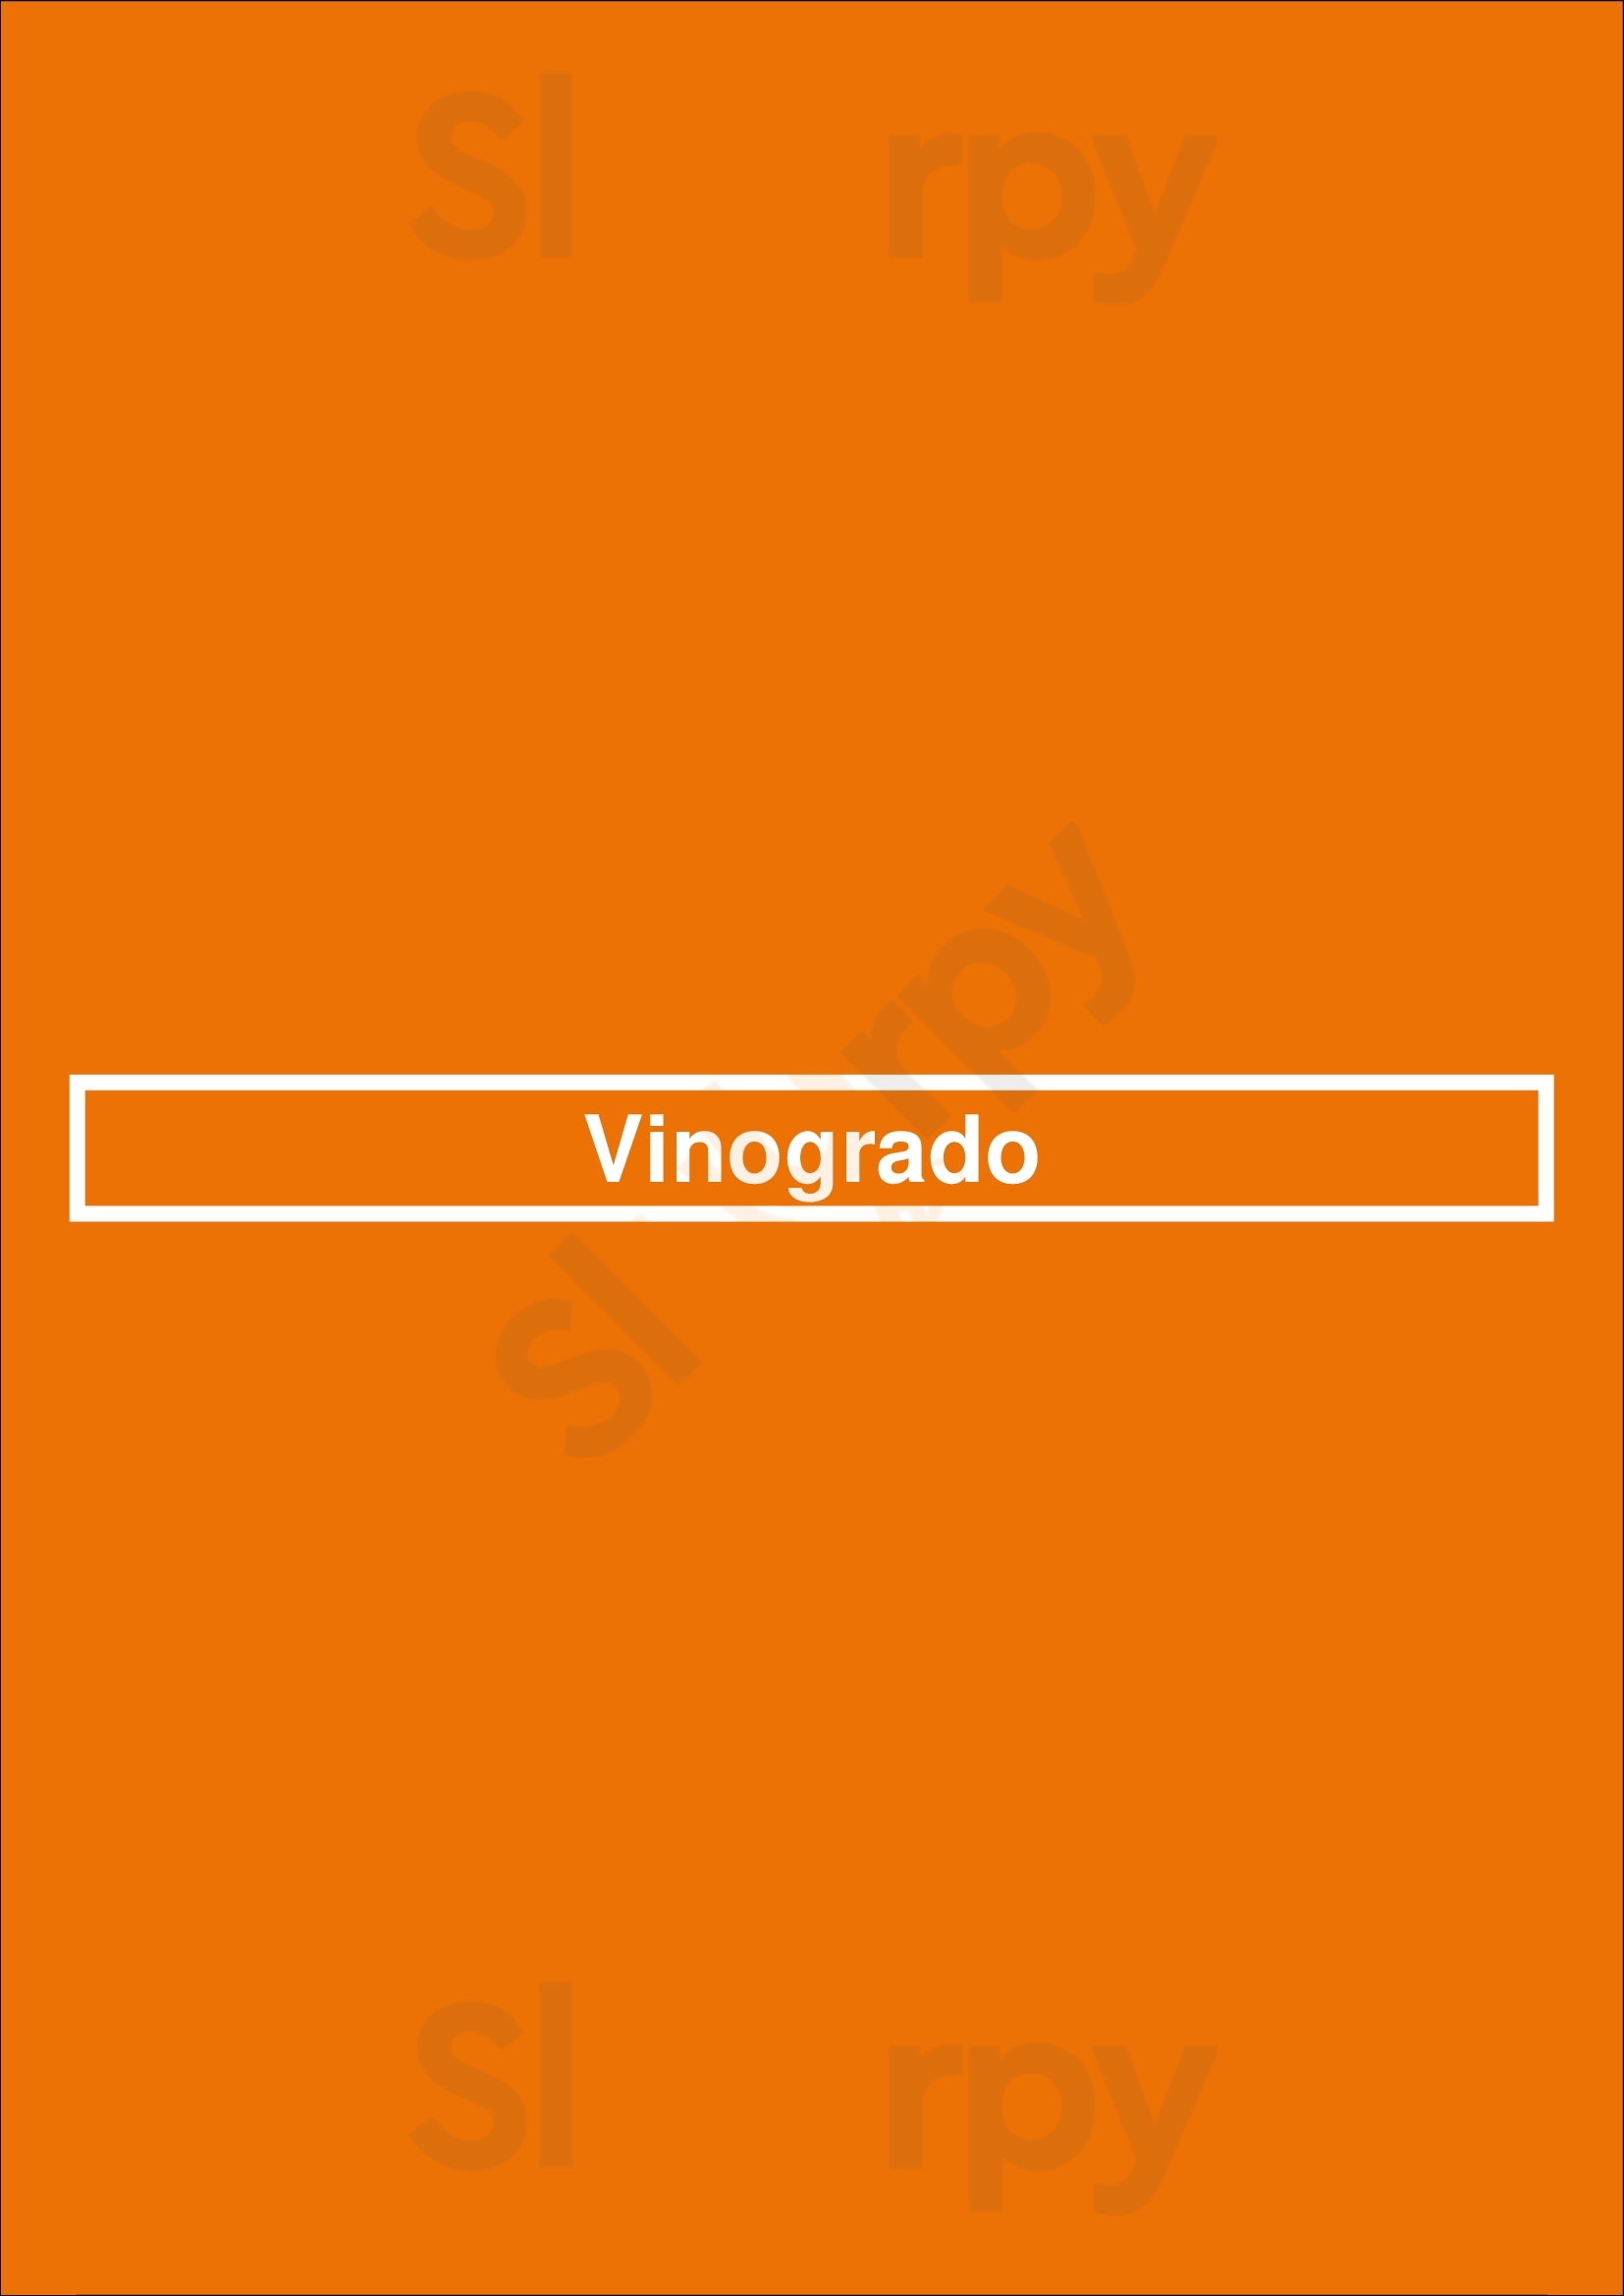 Vinogrado Barcelona Menu - 1